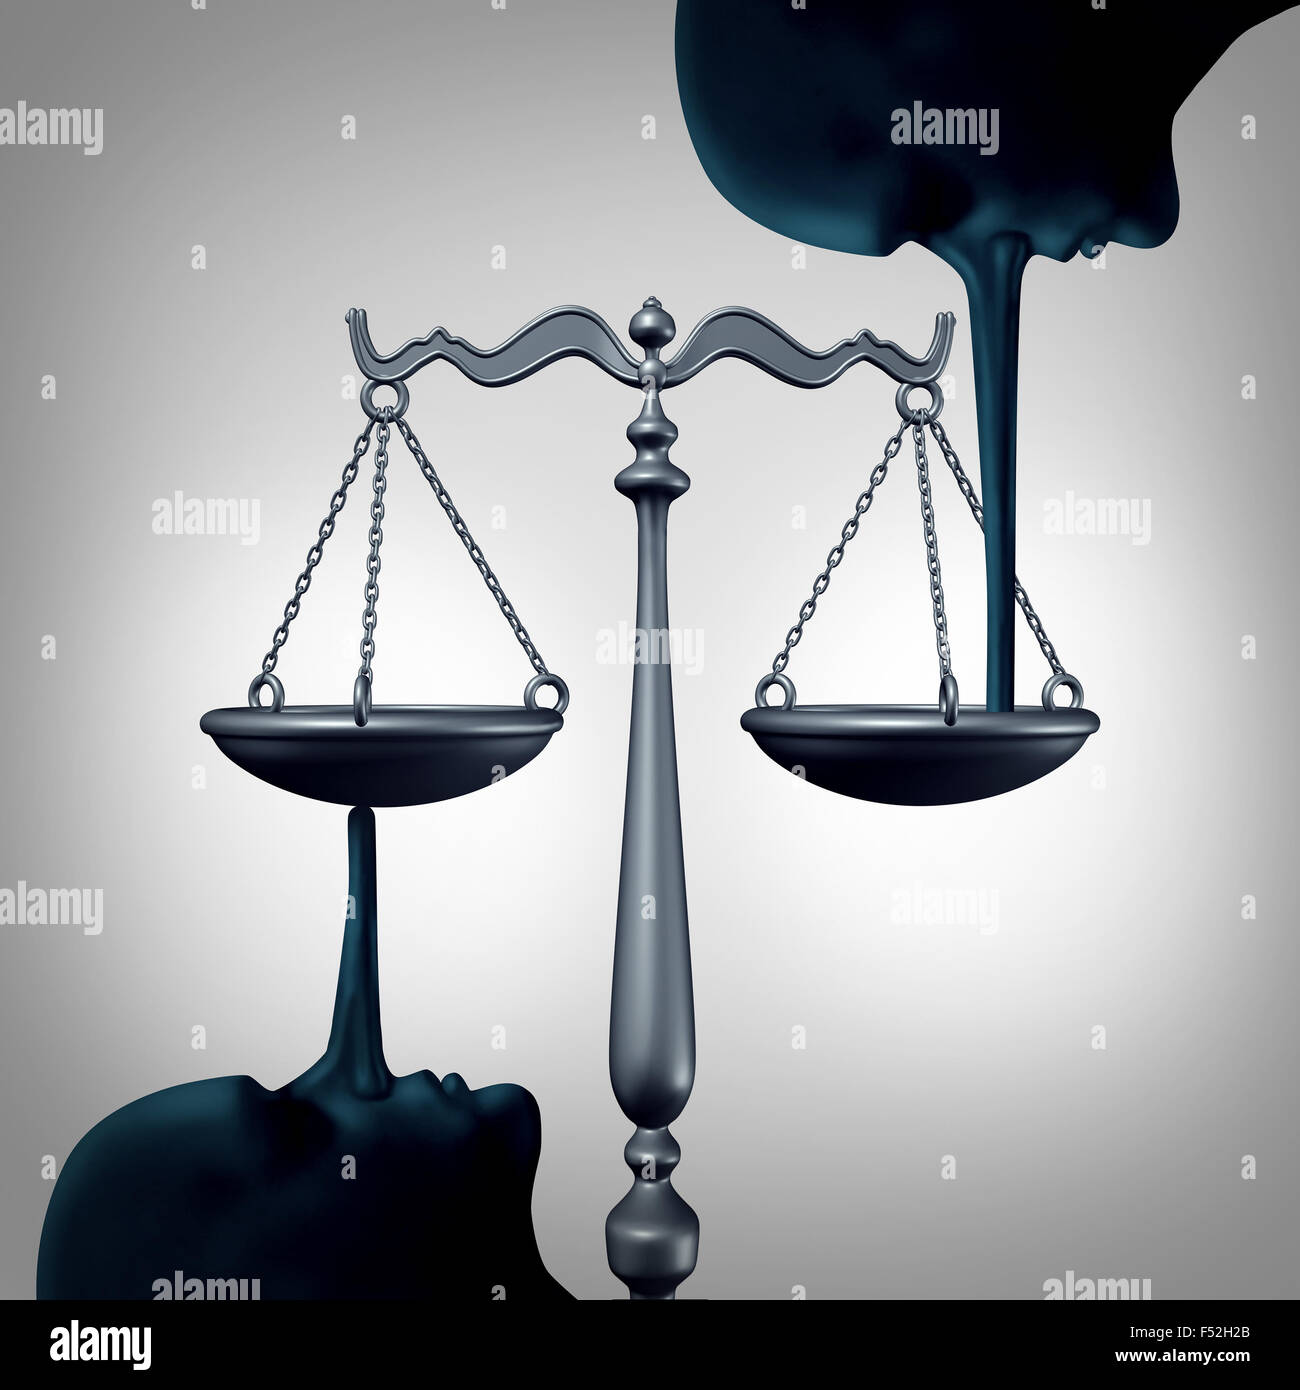 Liegende Konzept der Gerechtigkeit und Meineid Symbol als Gesetz Skala wird ausgeglichen durch die lange Nase des Liers, Falschaussagen und Lügen des Rechtssystems als Metapher für Unehrlichkeit und Mangel an Integrität zu begehen. Stockfoto